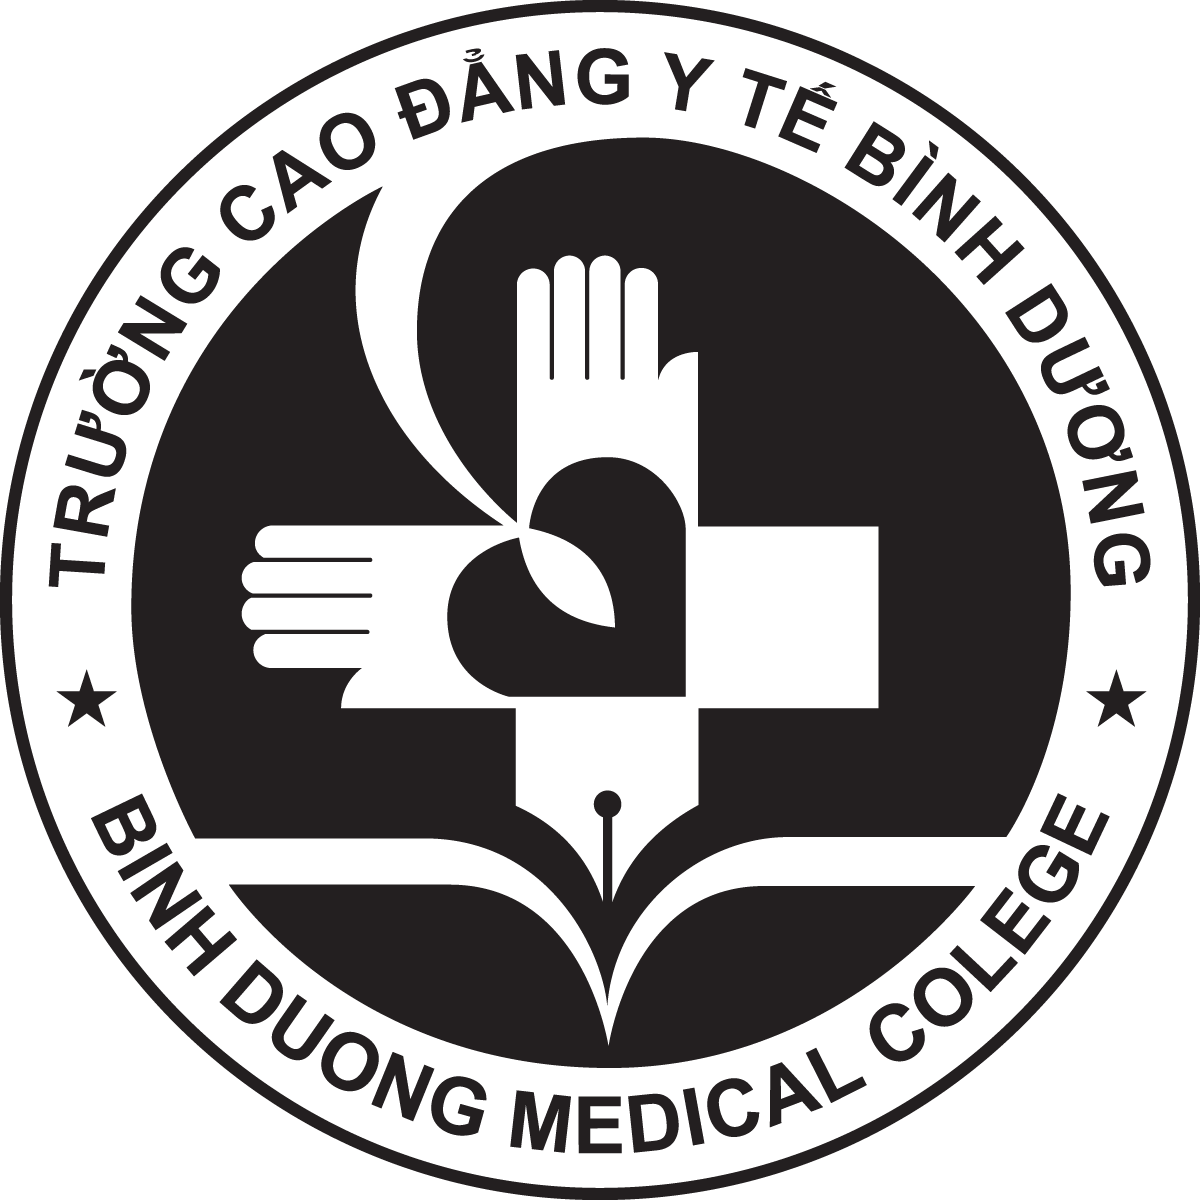 Logo Truong Cao Dang Y Te Binh Duong am ban